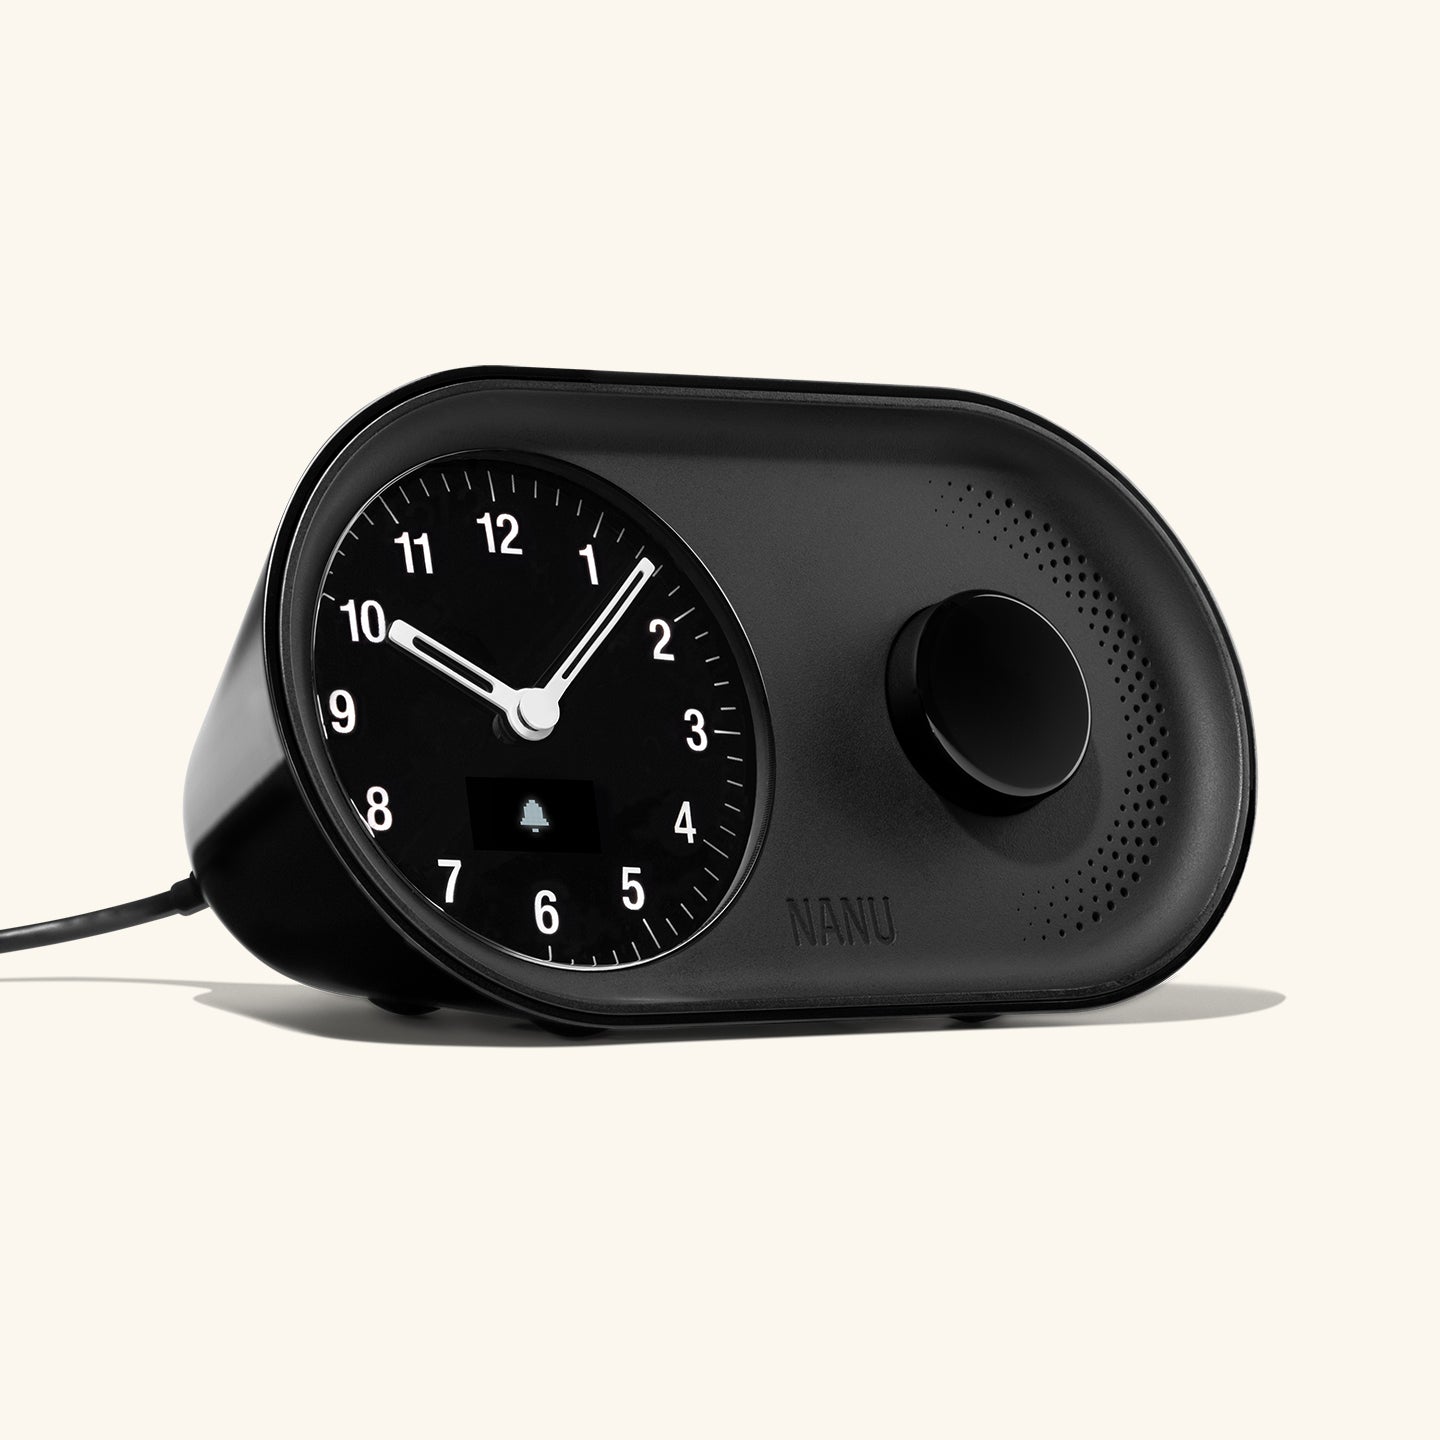 Arc Alarm Clock in Black